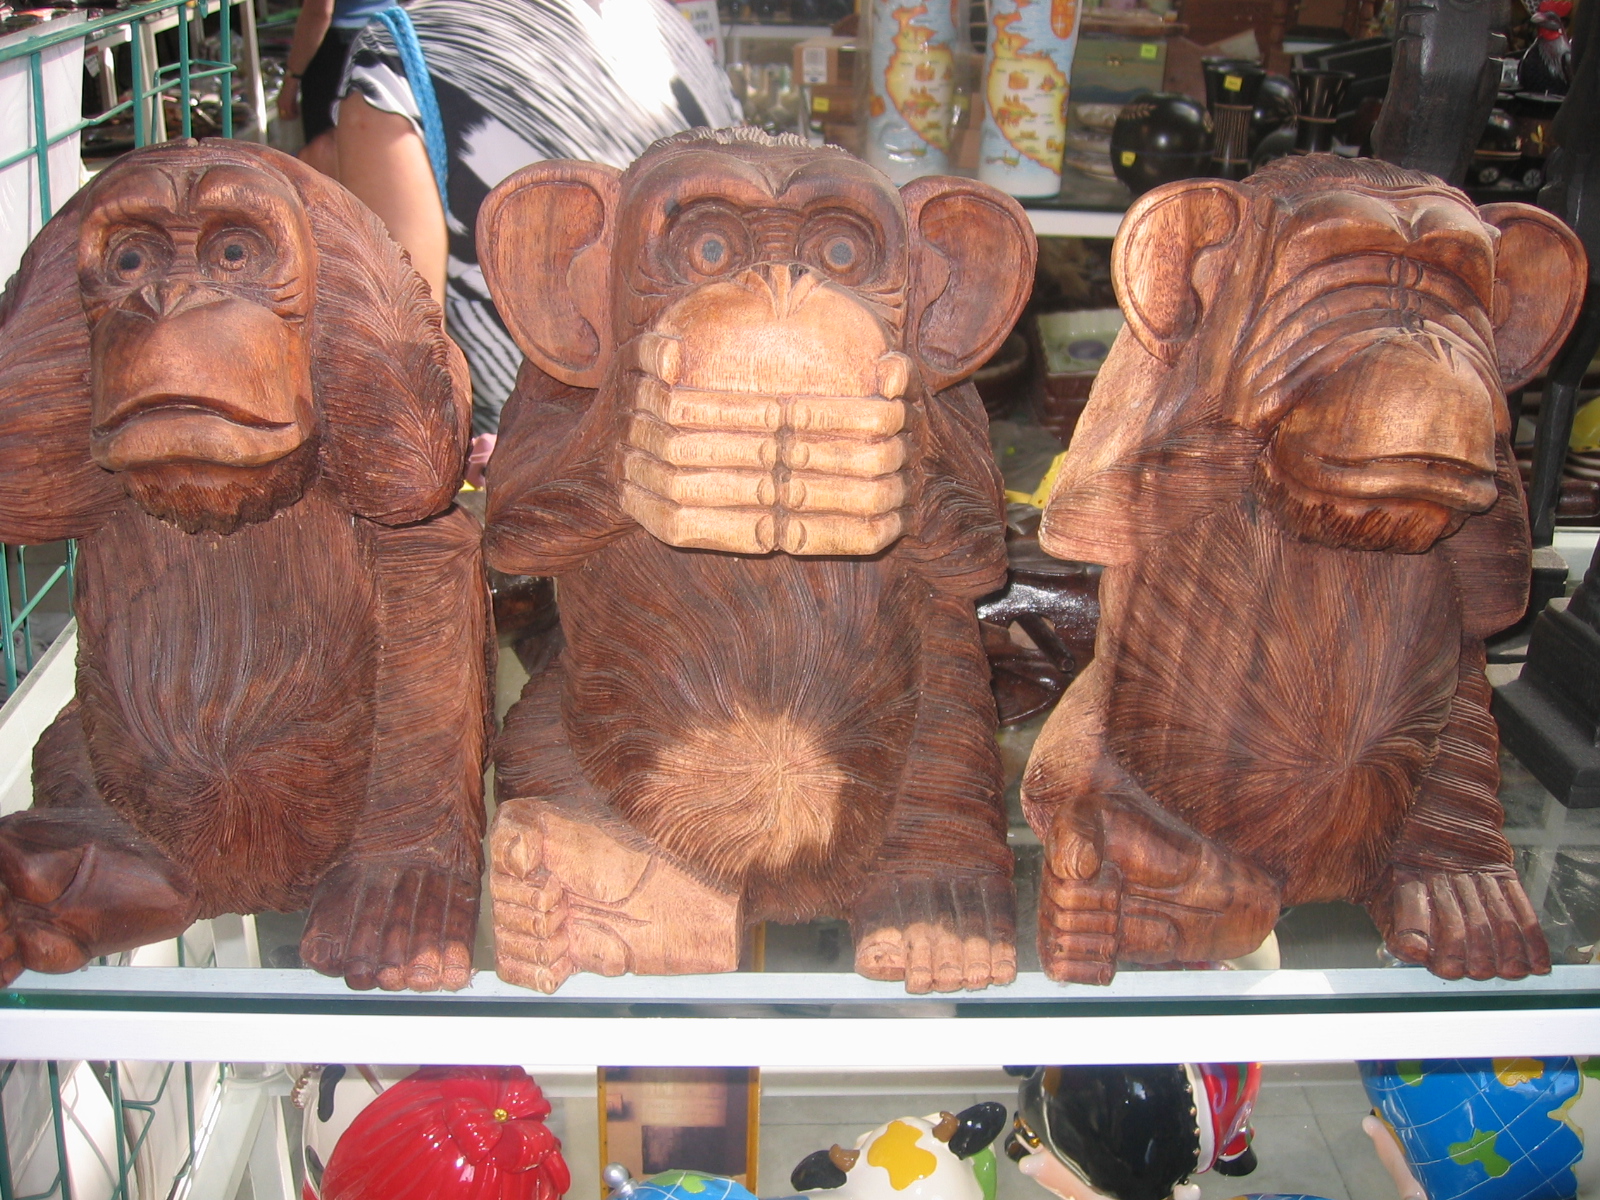 three wise monkeys « wise monkeys abroad